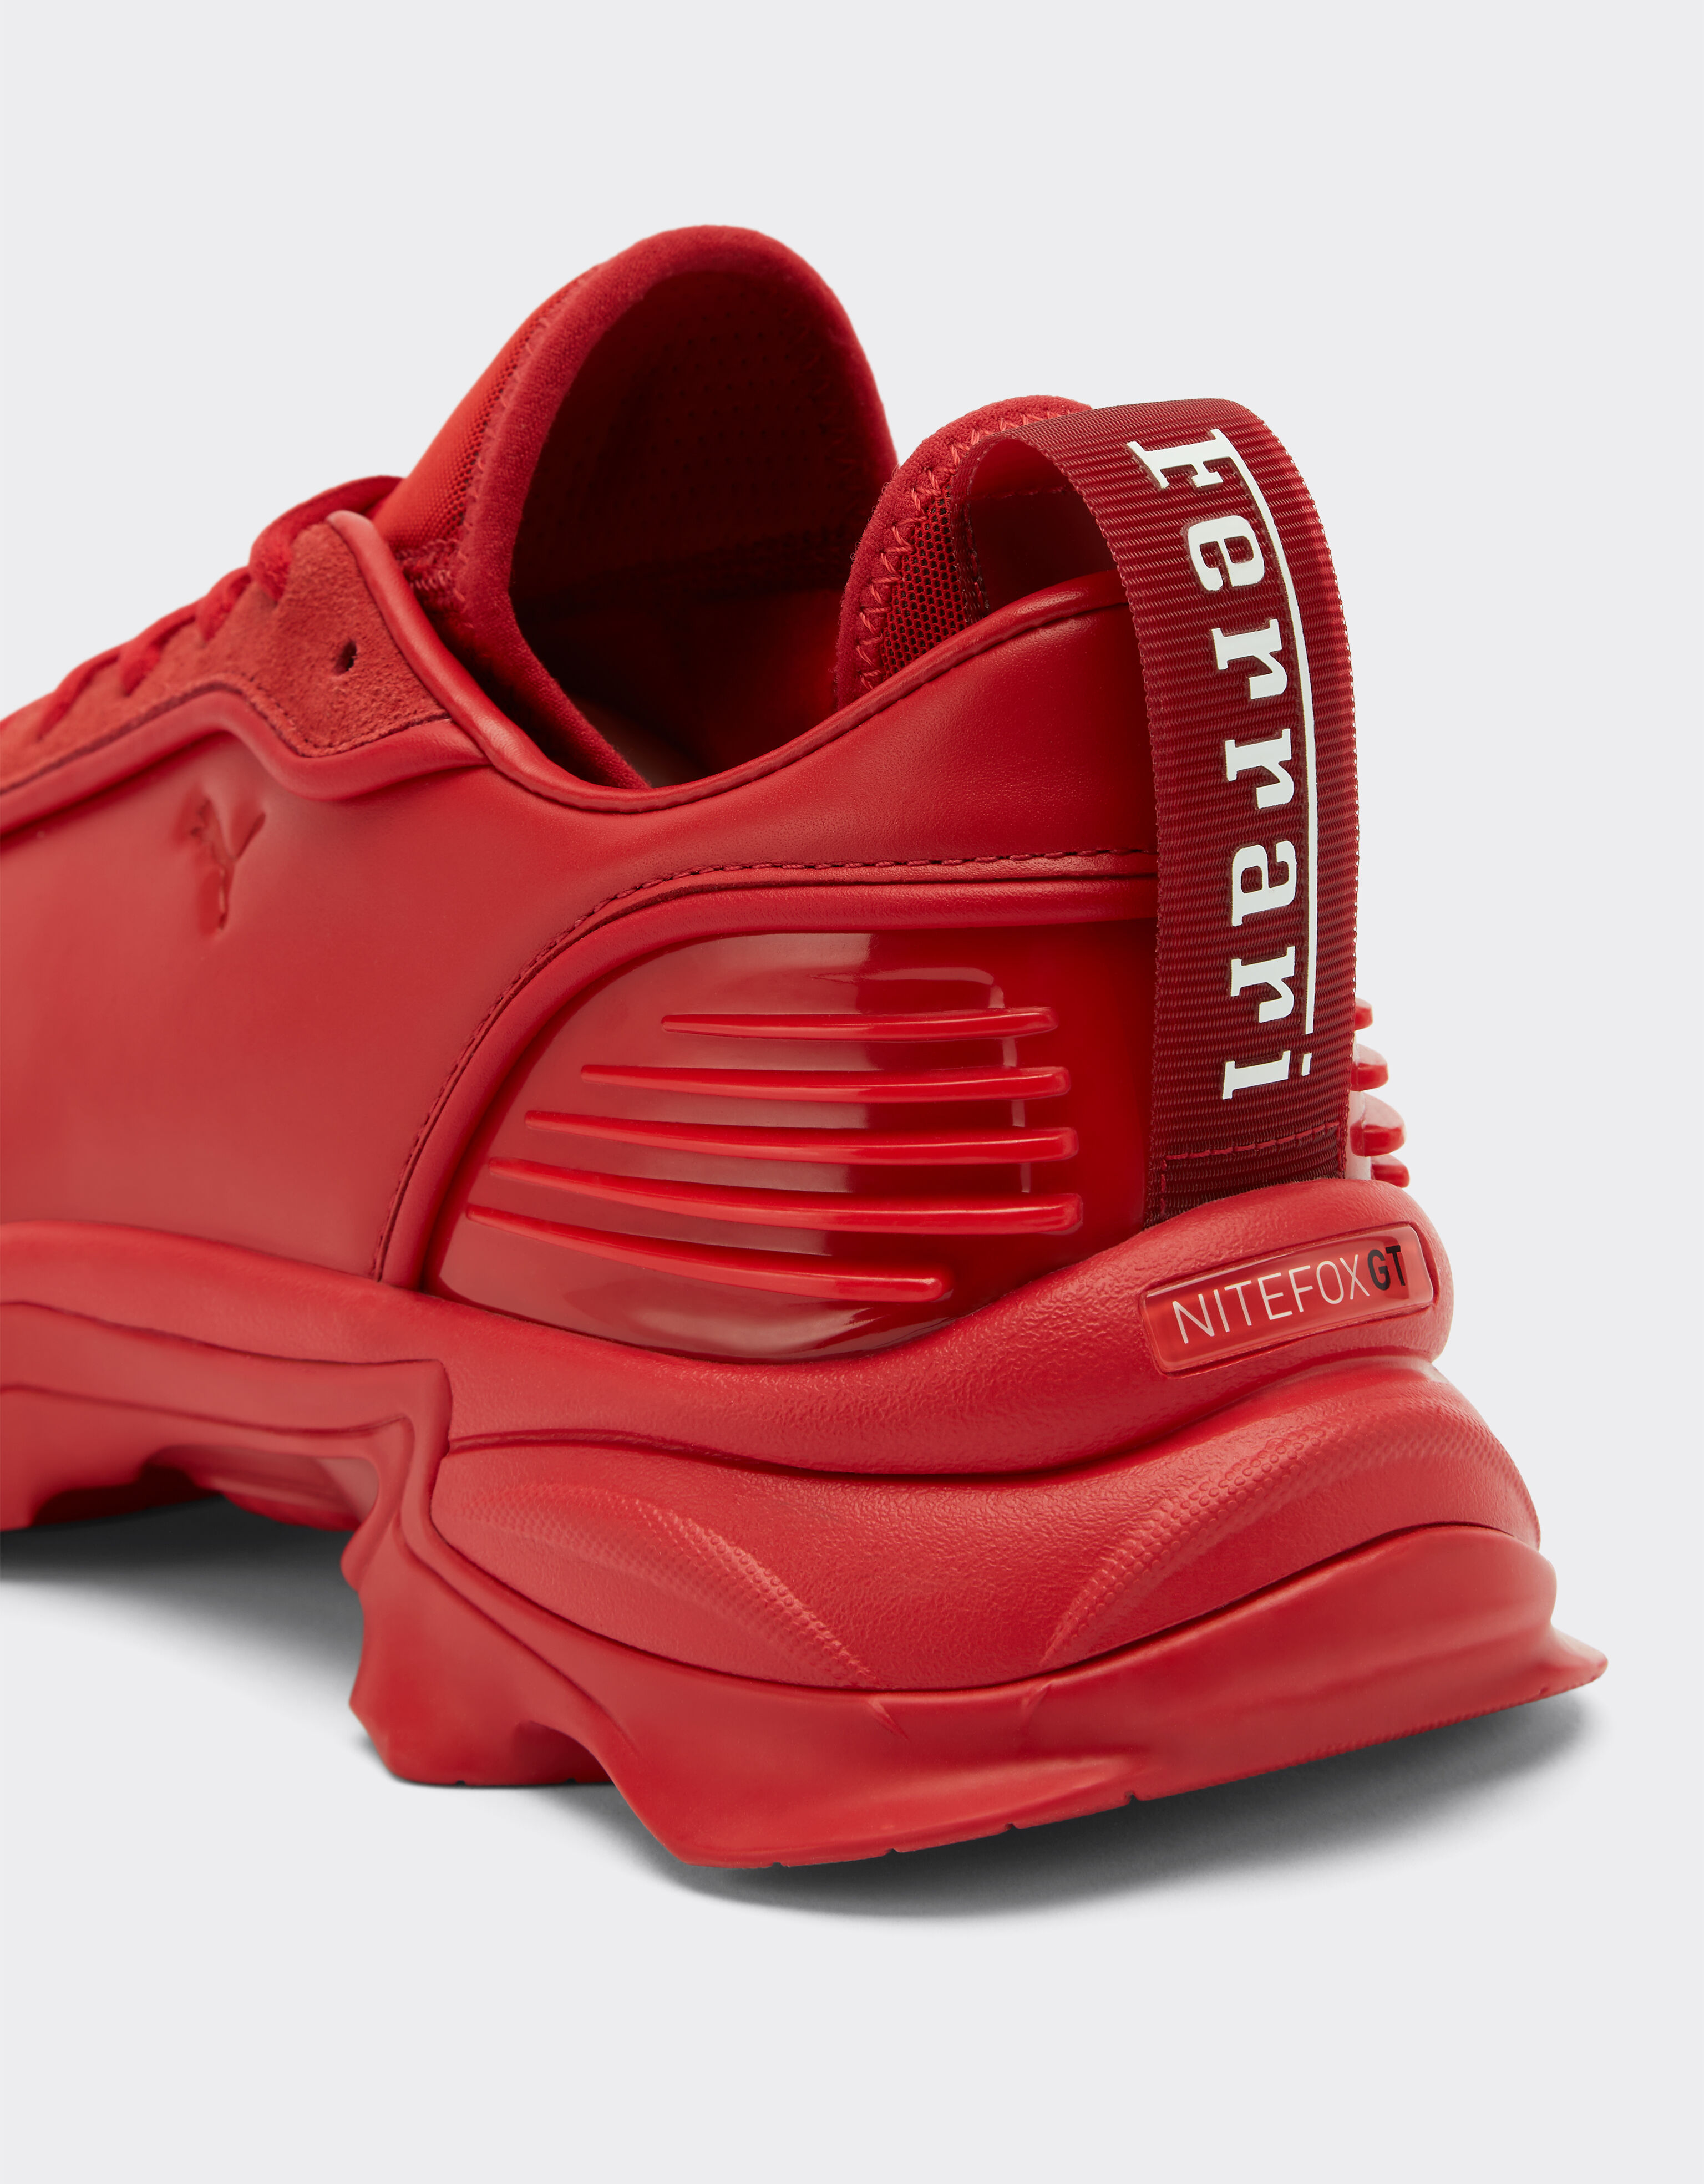 Ferrari Puma 呈现法拉利 Rosso Dino 红色 Nitefox 训练鞋 –法拉利独家 红色 F0709f